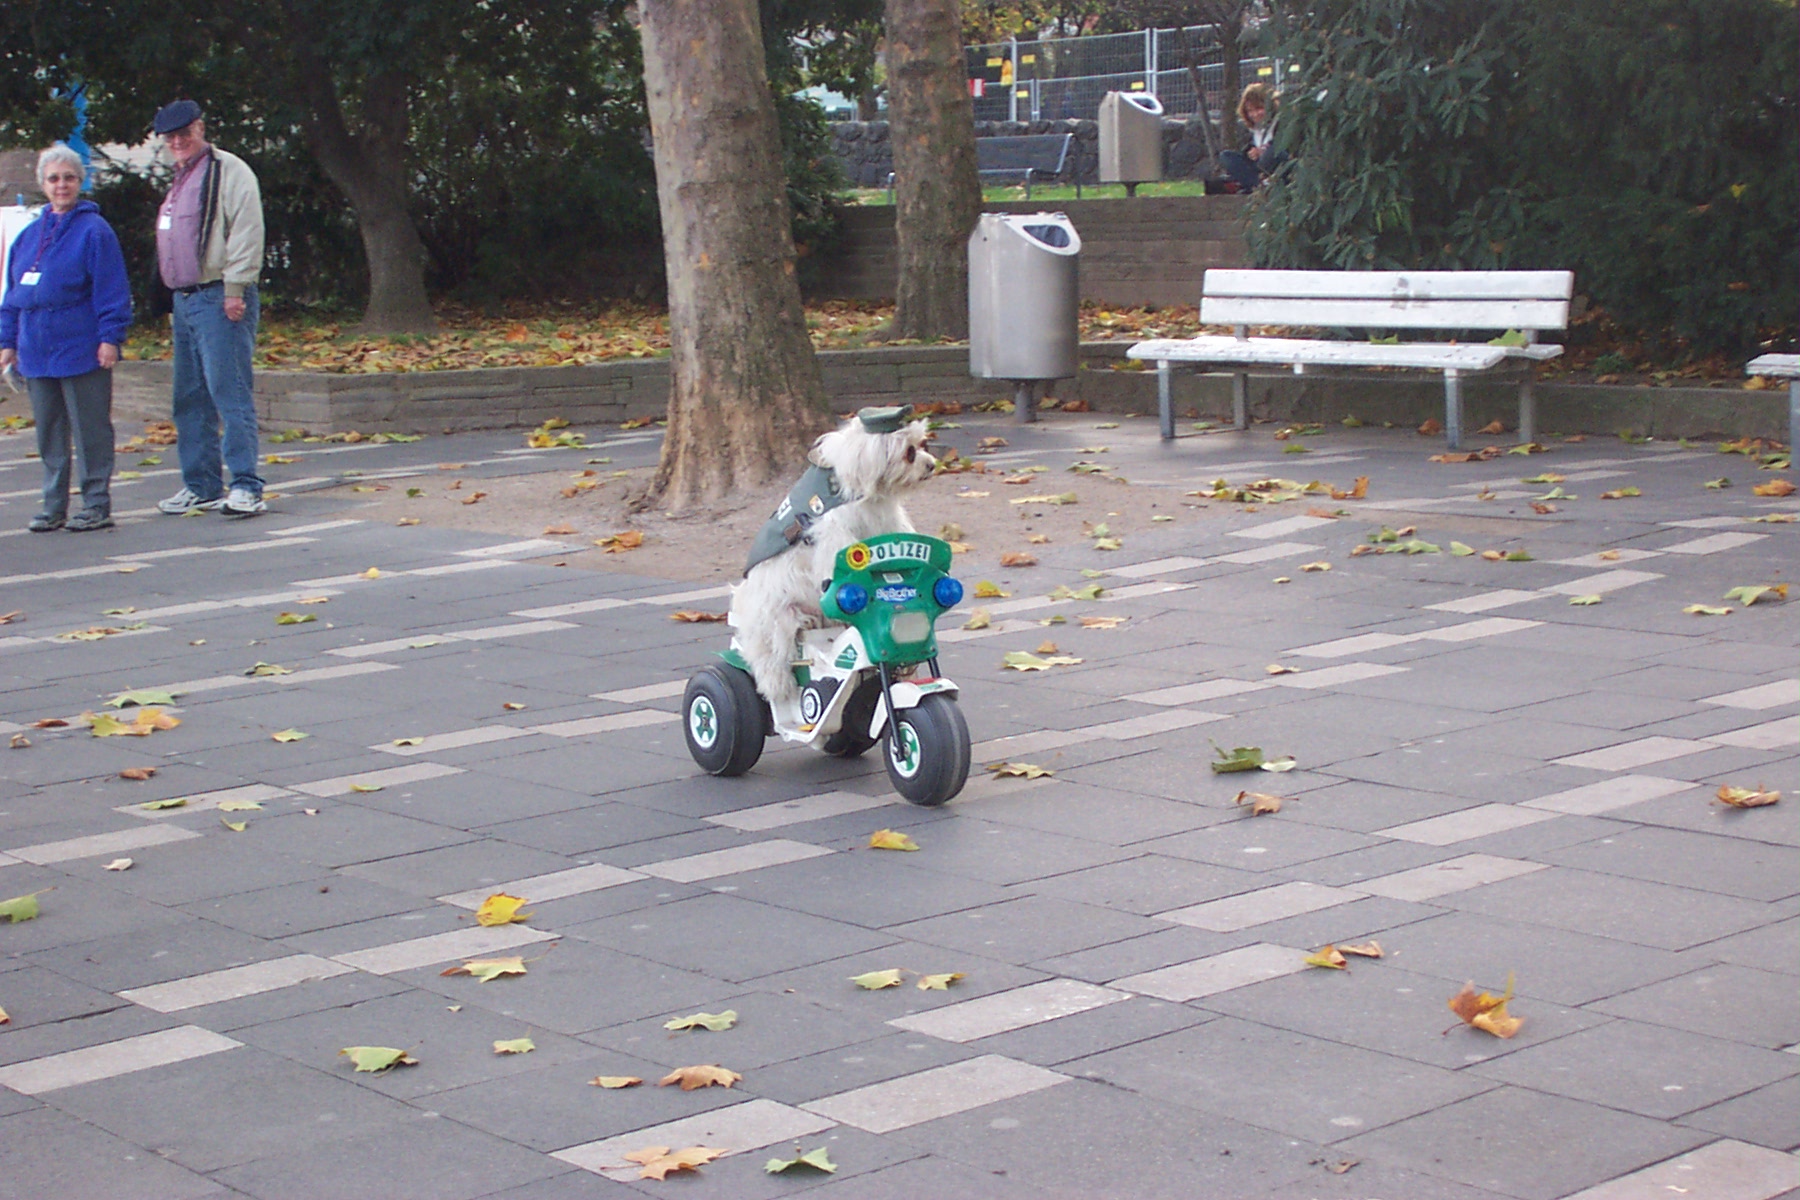 a dog is riding a trike on a sidewalk